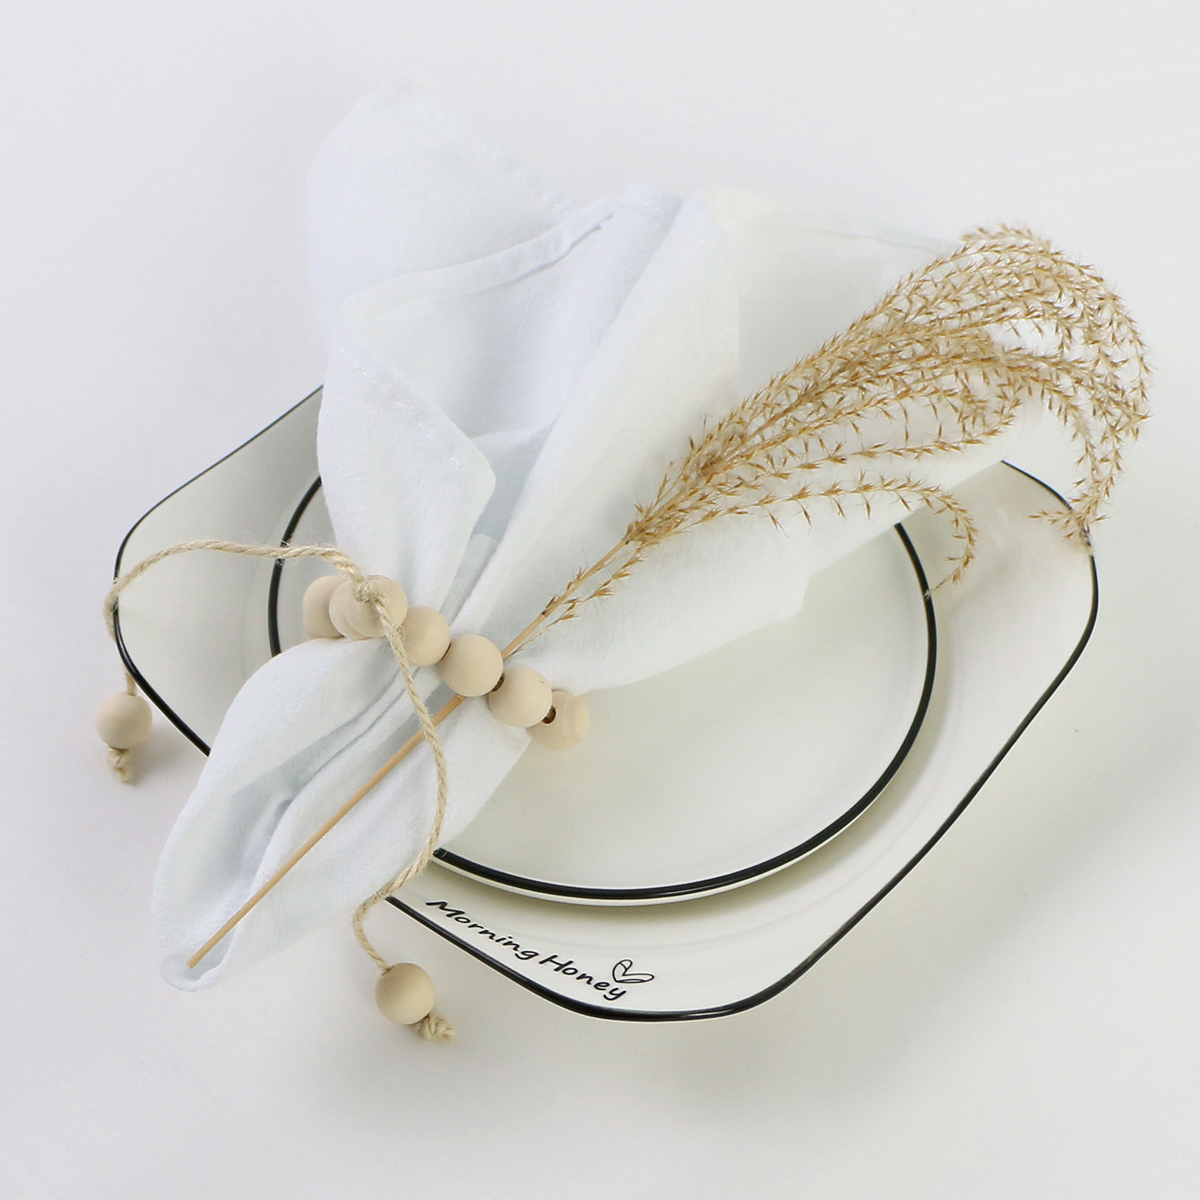 Masa peçete porsiyon masa bezi peçeteleri pamuk kumaş serviette ev mutfak çay havluları düğün için beyaz siyah